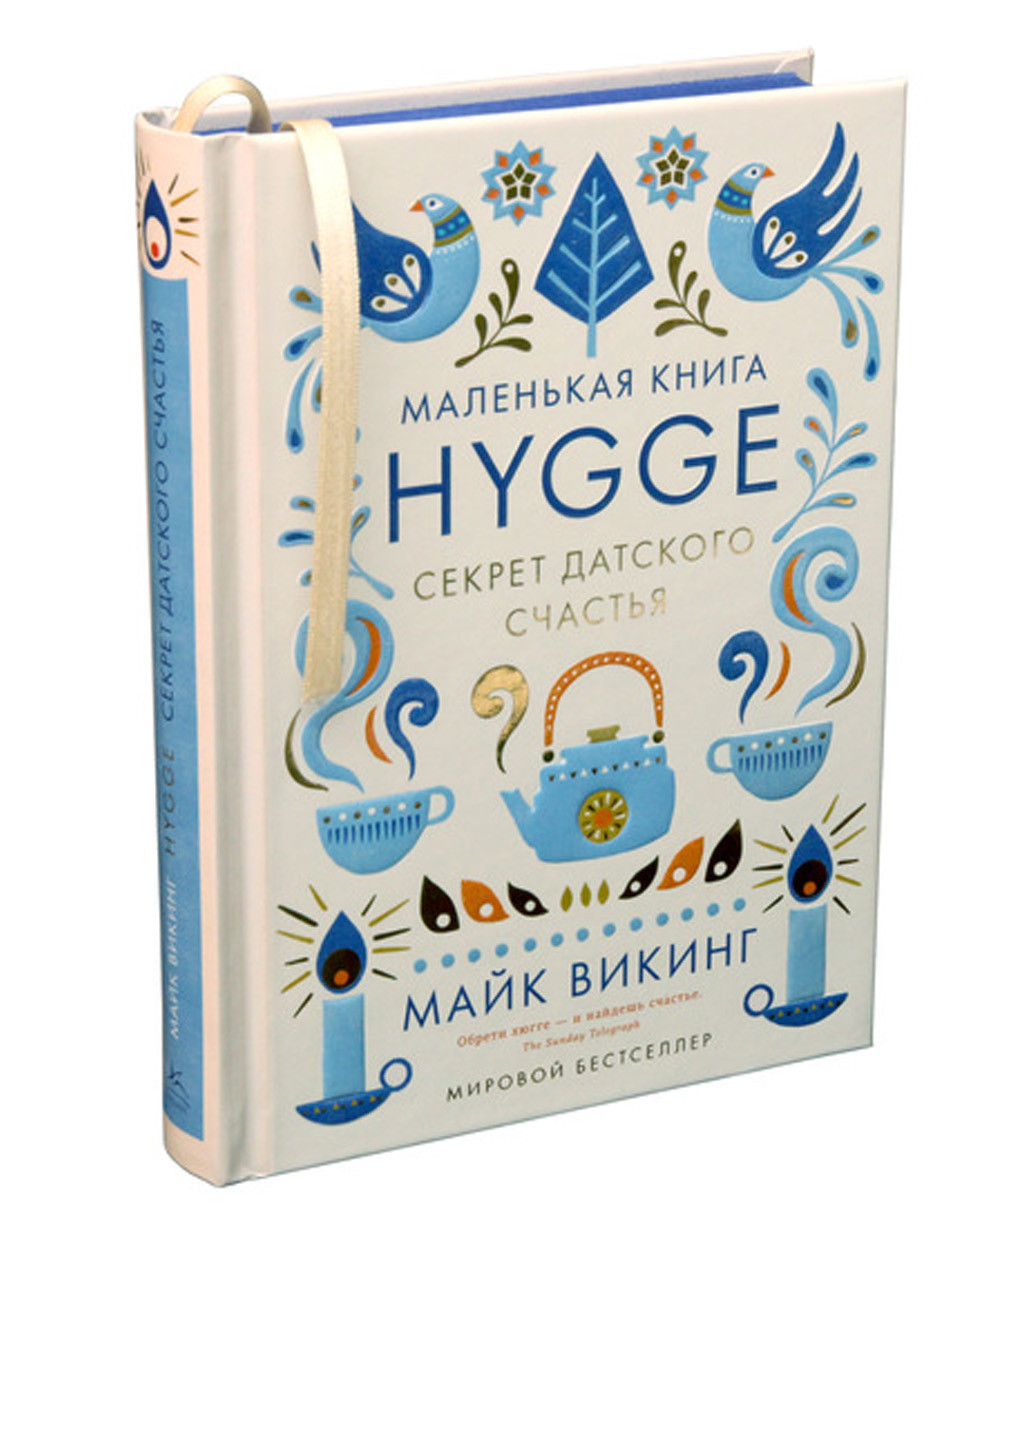 Книга "Hygge. Секрет датського щастя" Издательство "Колибри" (17638784)